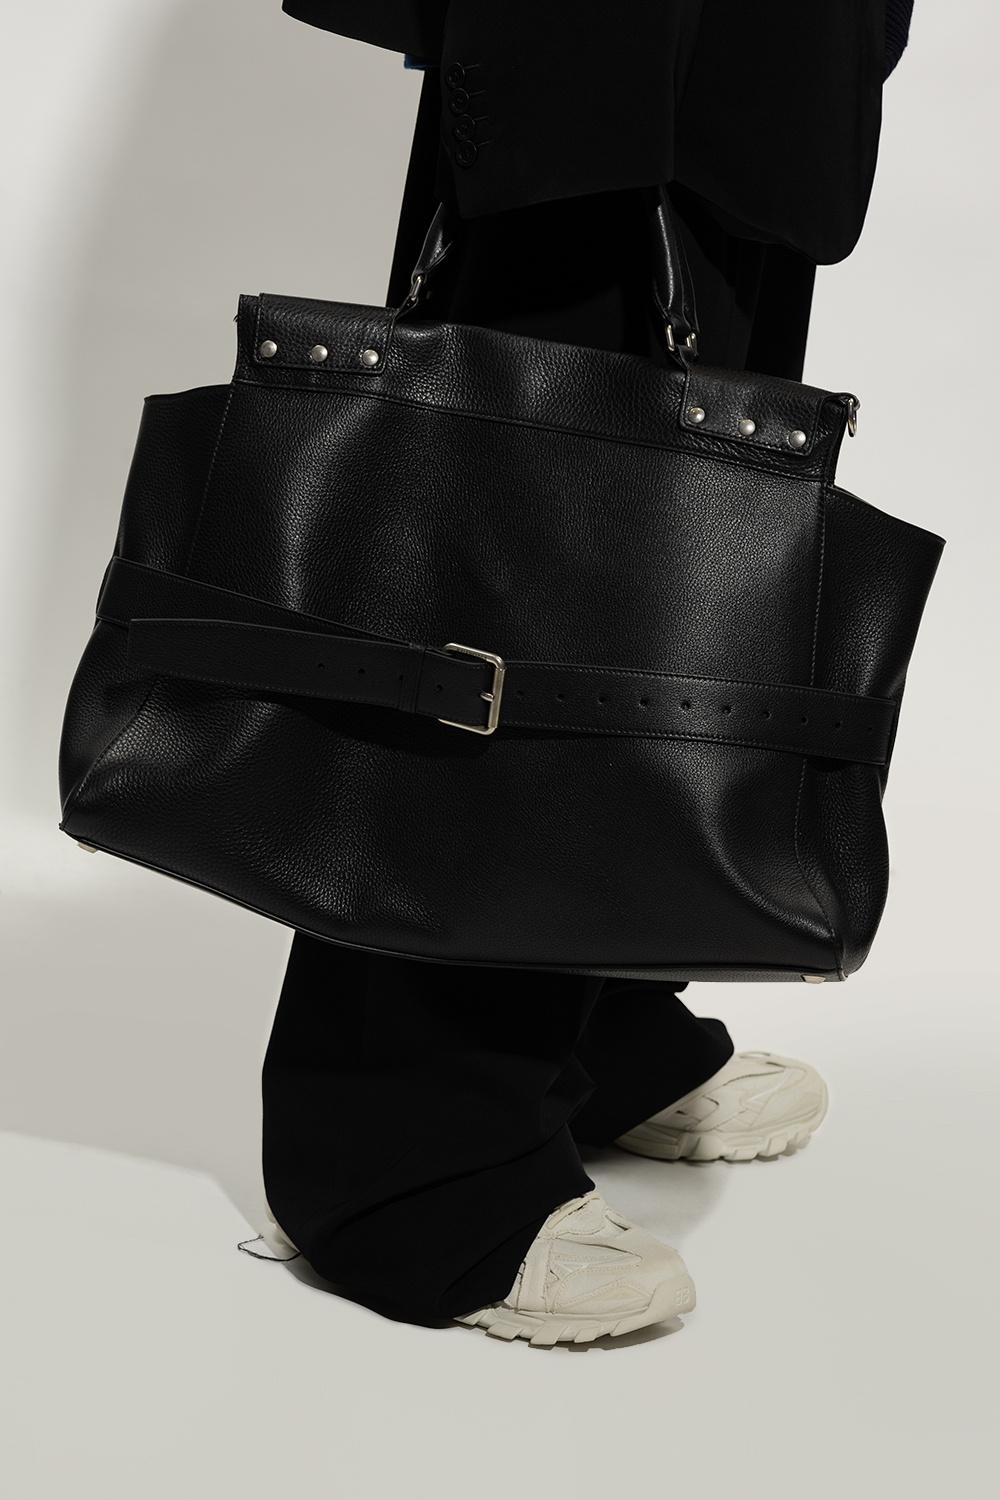 Balenciaga Large Bags & Handbags for Women